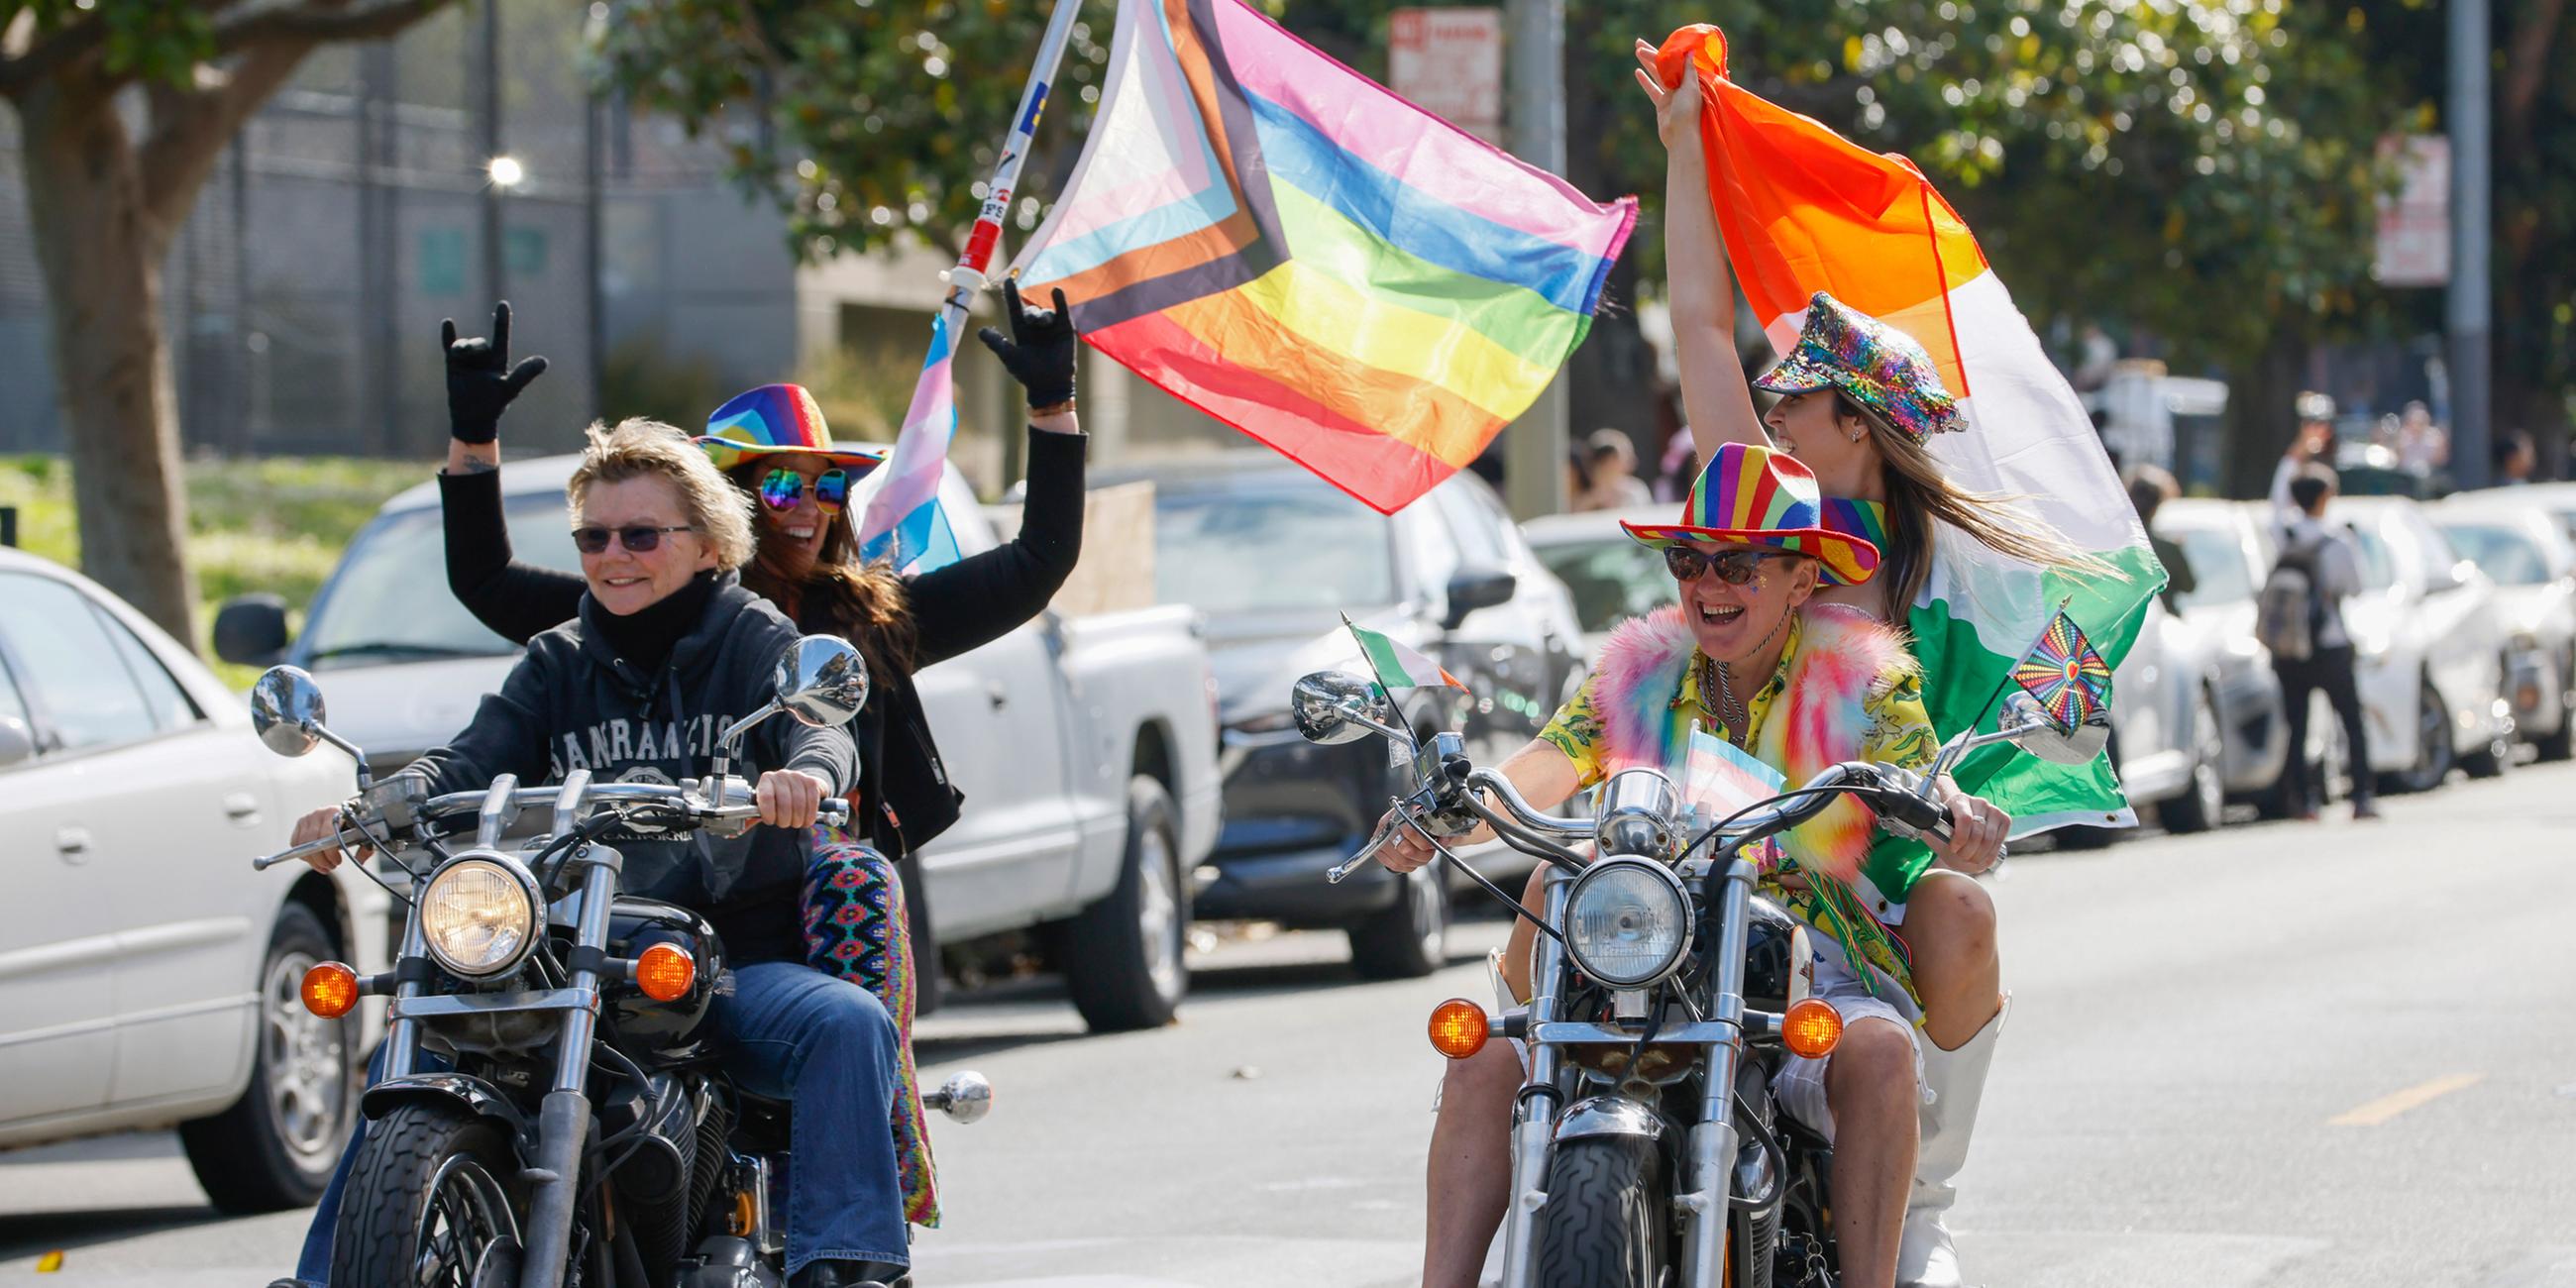 Die Parade in San Francisco wurde traditionell von "Dykes on Bikes" (Lesben auf Motorrädern) angeführt. 